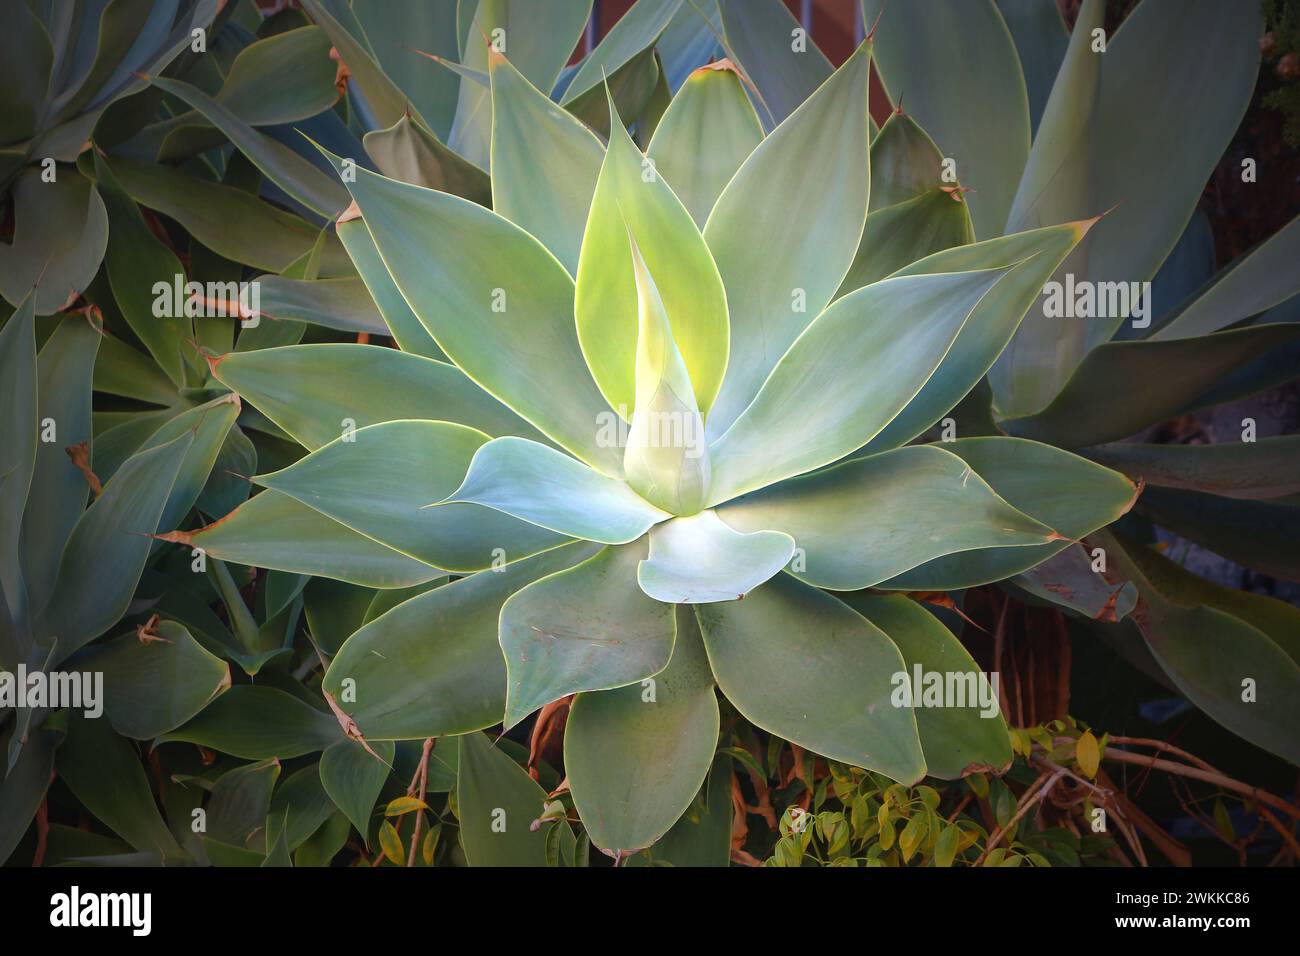 Agave attenuata una delle agavi disarmate e una popolare pianta ornamentale da giardino in regioni con clima caldo (Tenerife, Spagna) Foto Stock